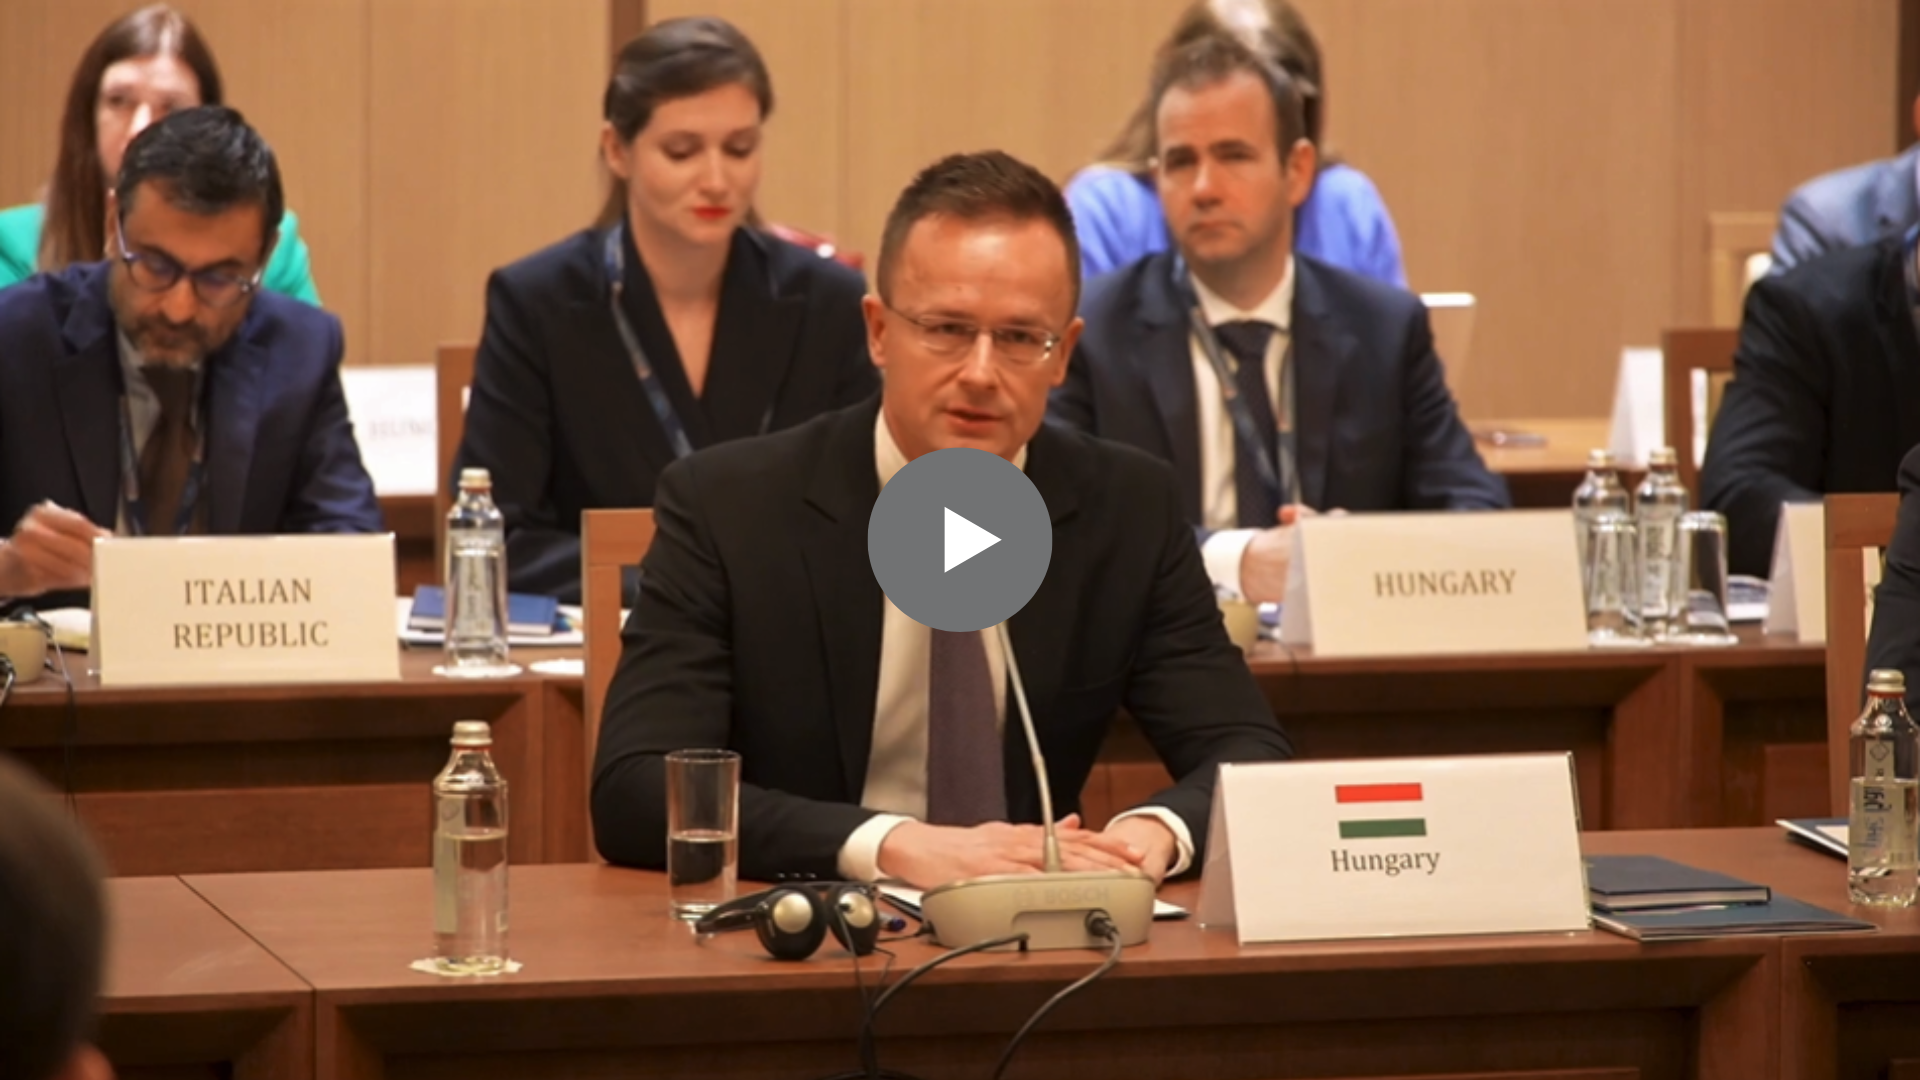 За словами Сійяро, Будапешт уже надав значну фінансову допомогу Україні та готовий робити це надалі. Але довгостроковий план спільних запозичень Угорщина не підтримуватиме.